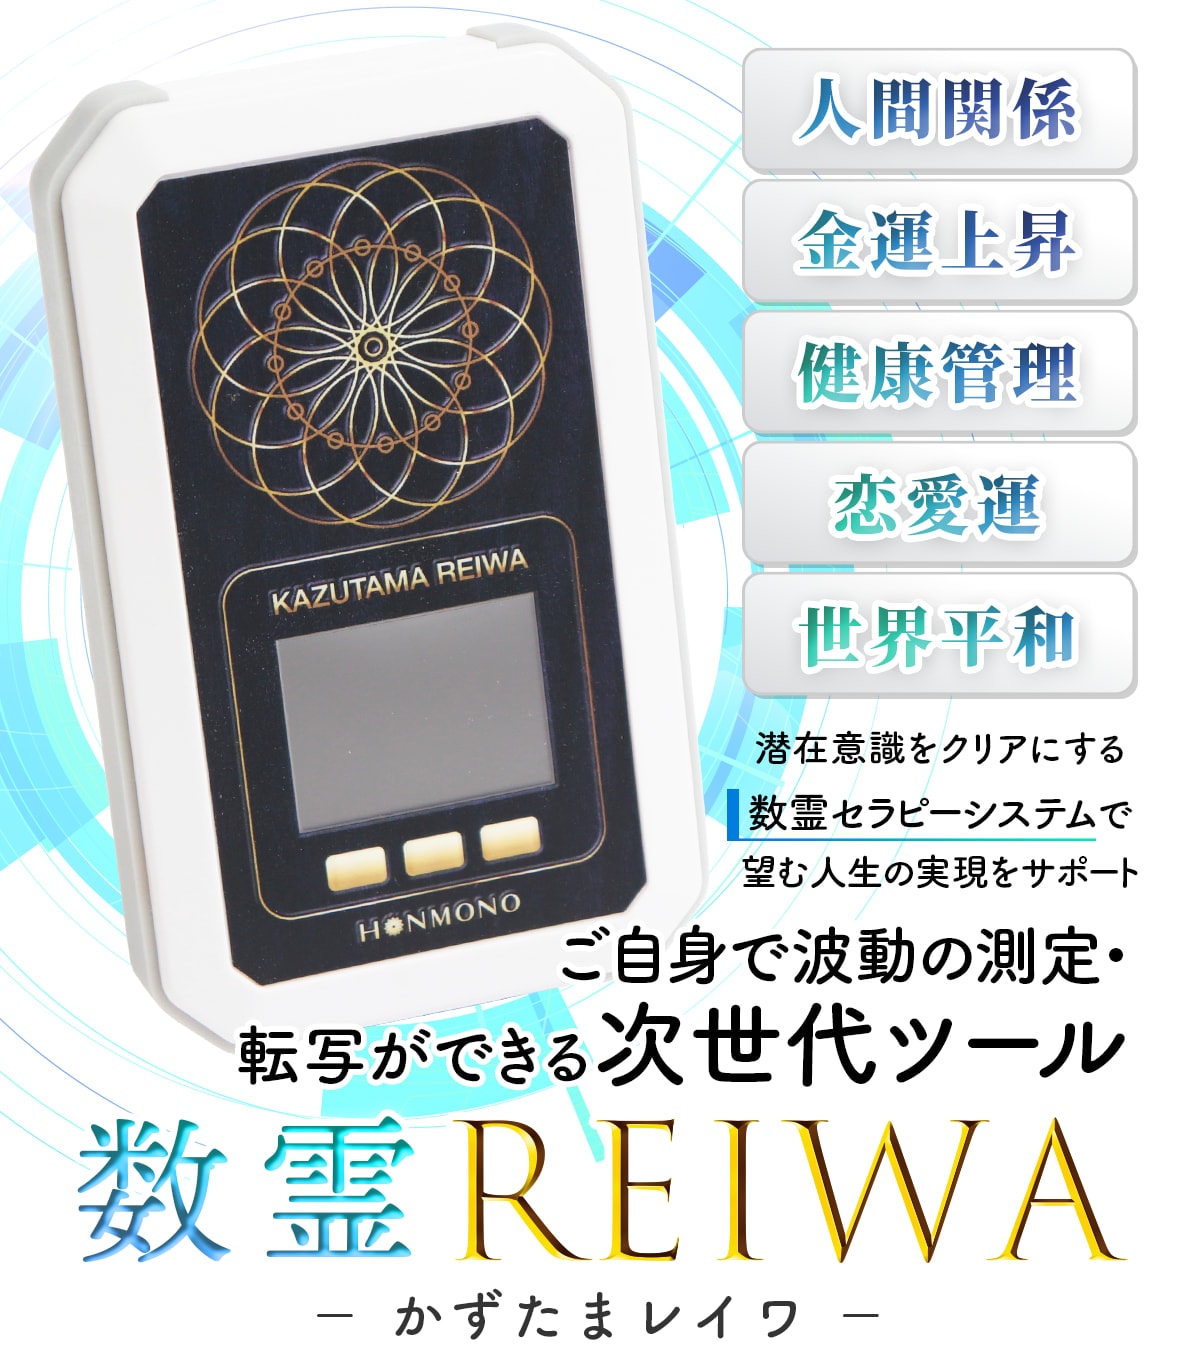 31,369円数霊 reiwa 波動測定器 本物研究所